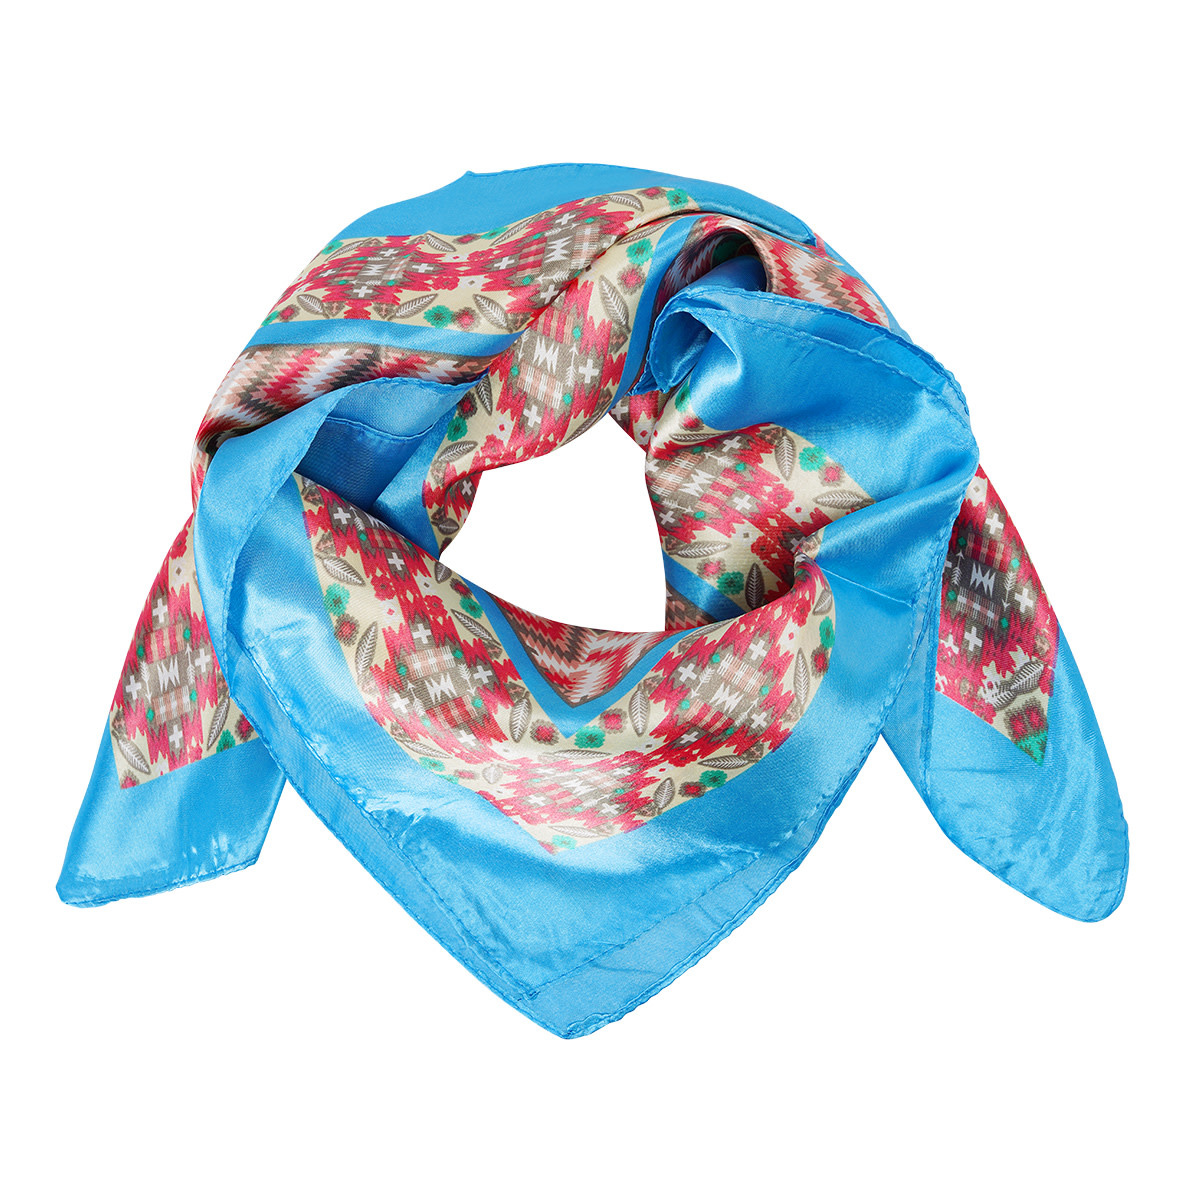 With love Summer scarf aqua 90cm x 90cm